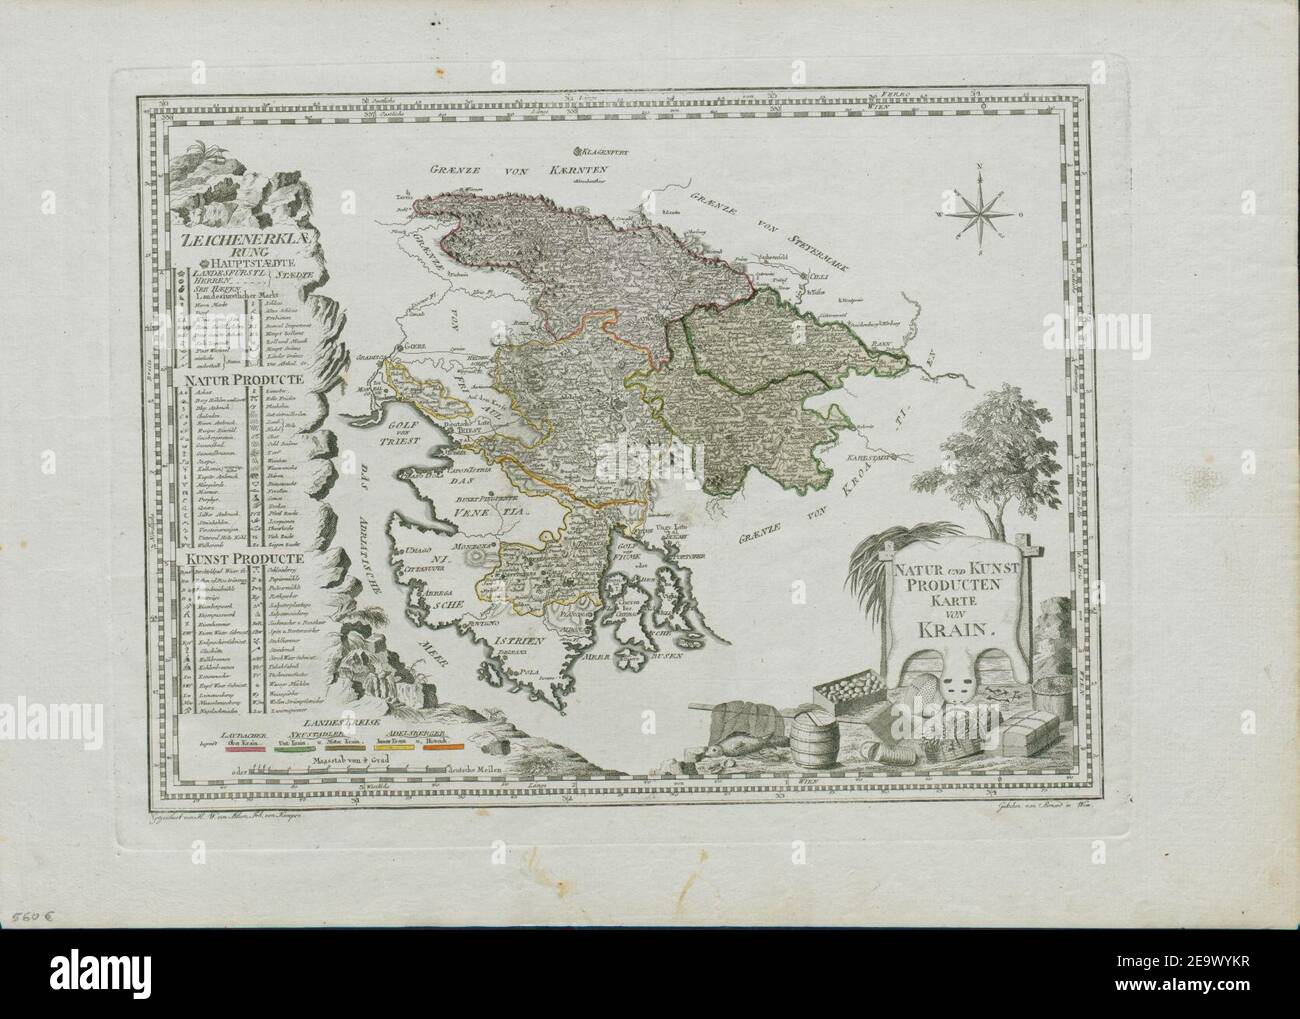 Natur und Kunst producten Karte von Krain 1795. Banque D'Images